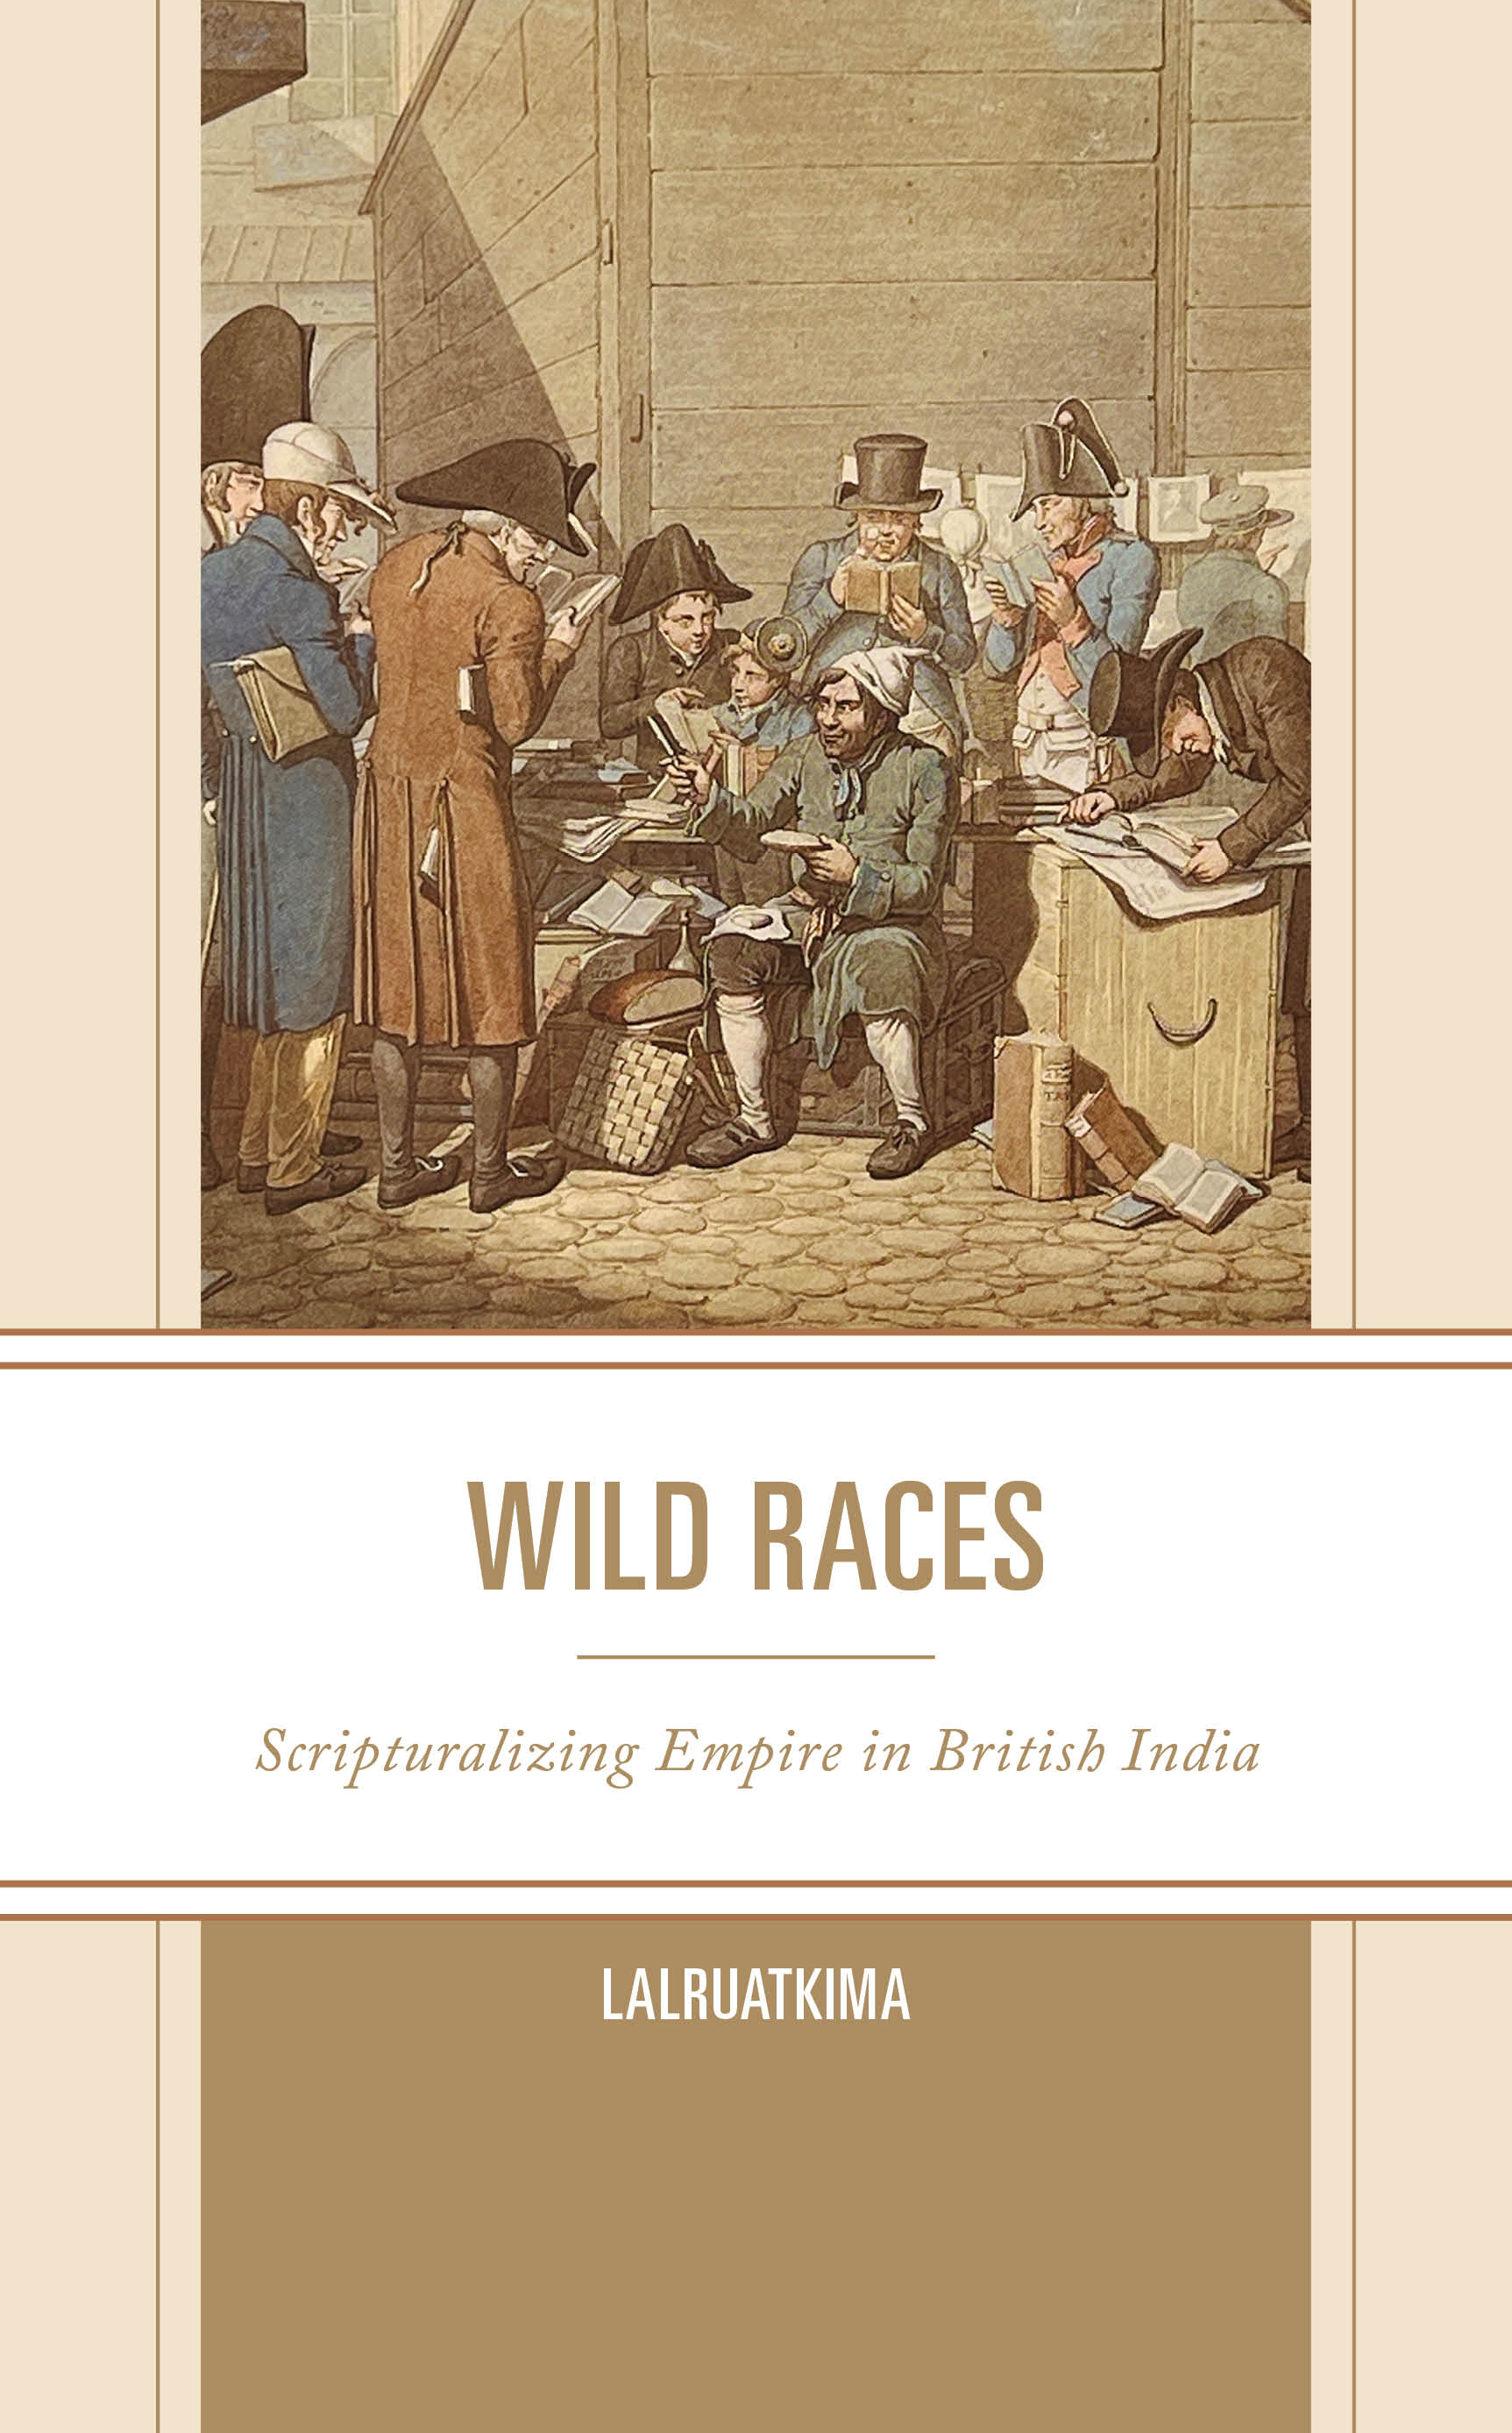 Wild Races: Scripturalizing Empire in British India